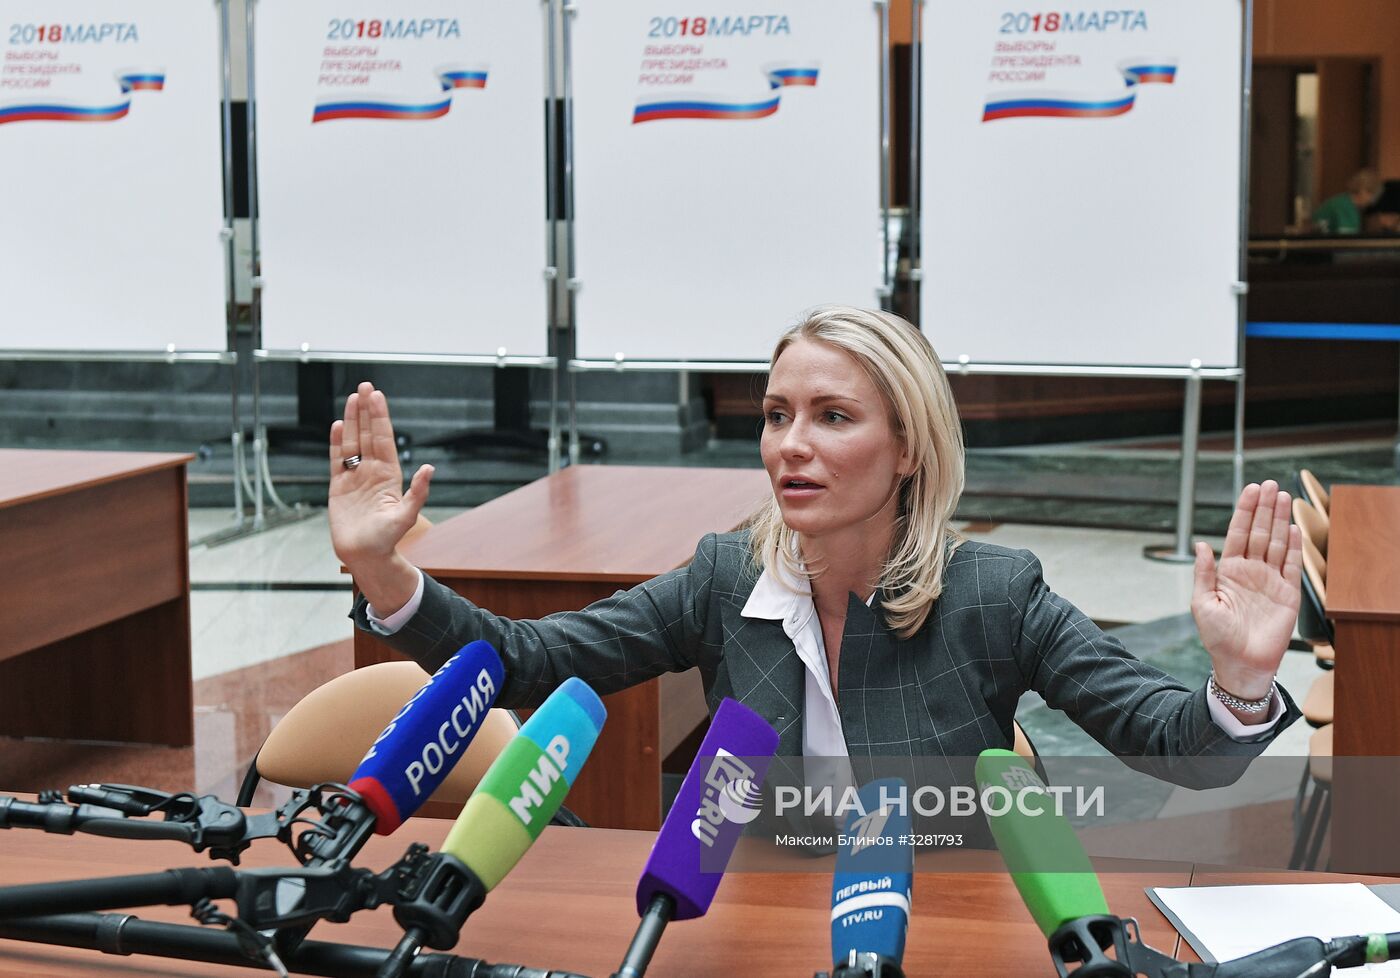 Екатерина Гордон сняла свою кандидатуру с президентских выборов 2018 года